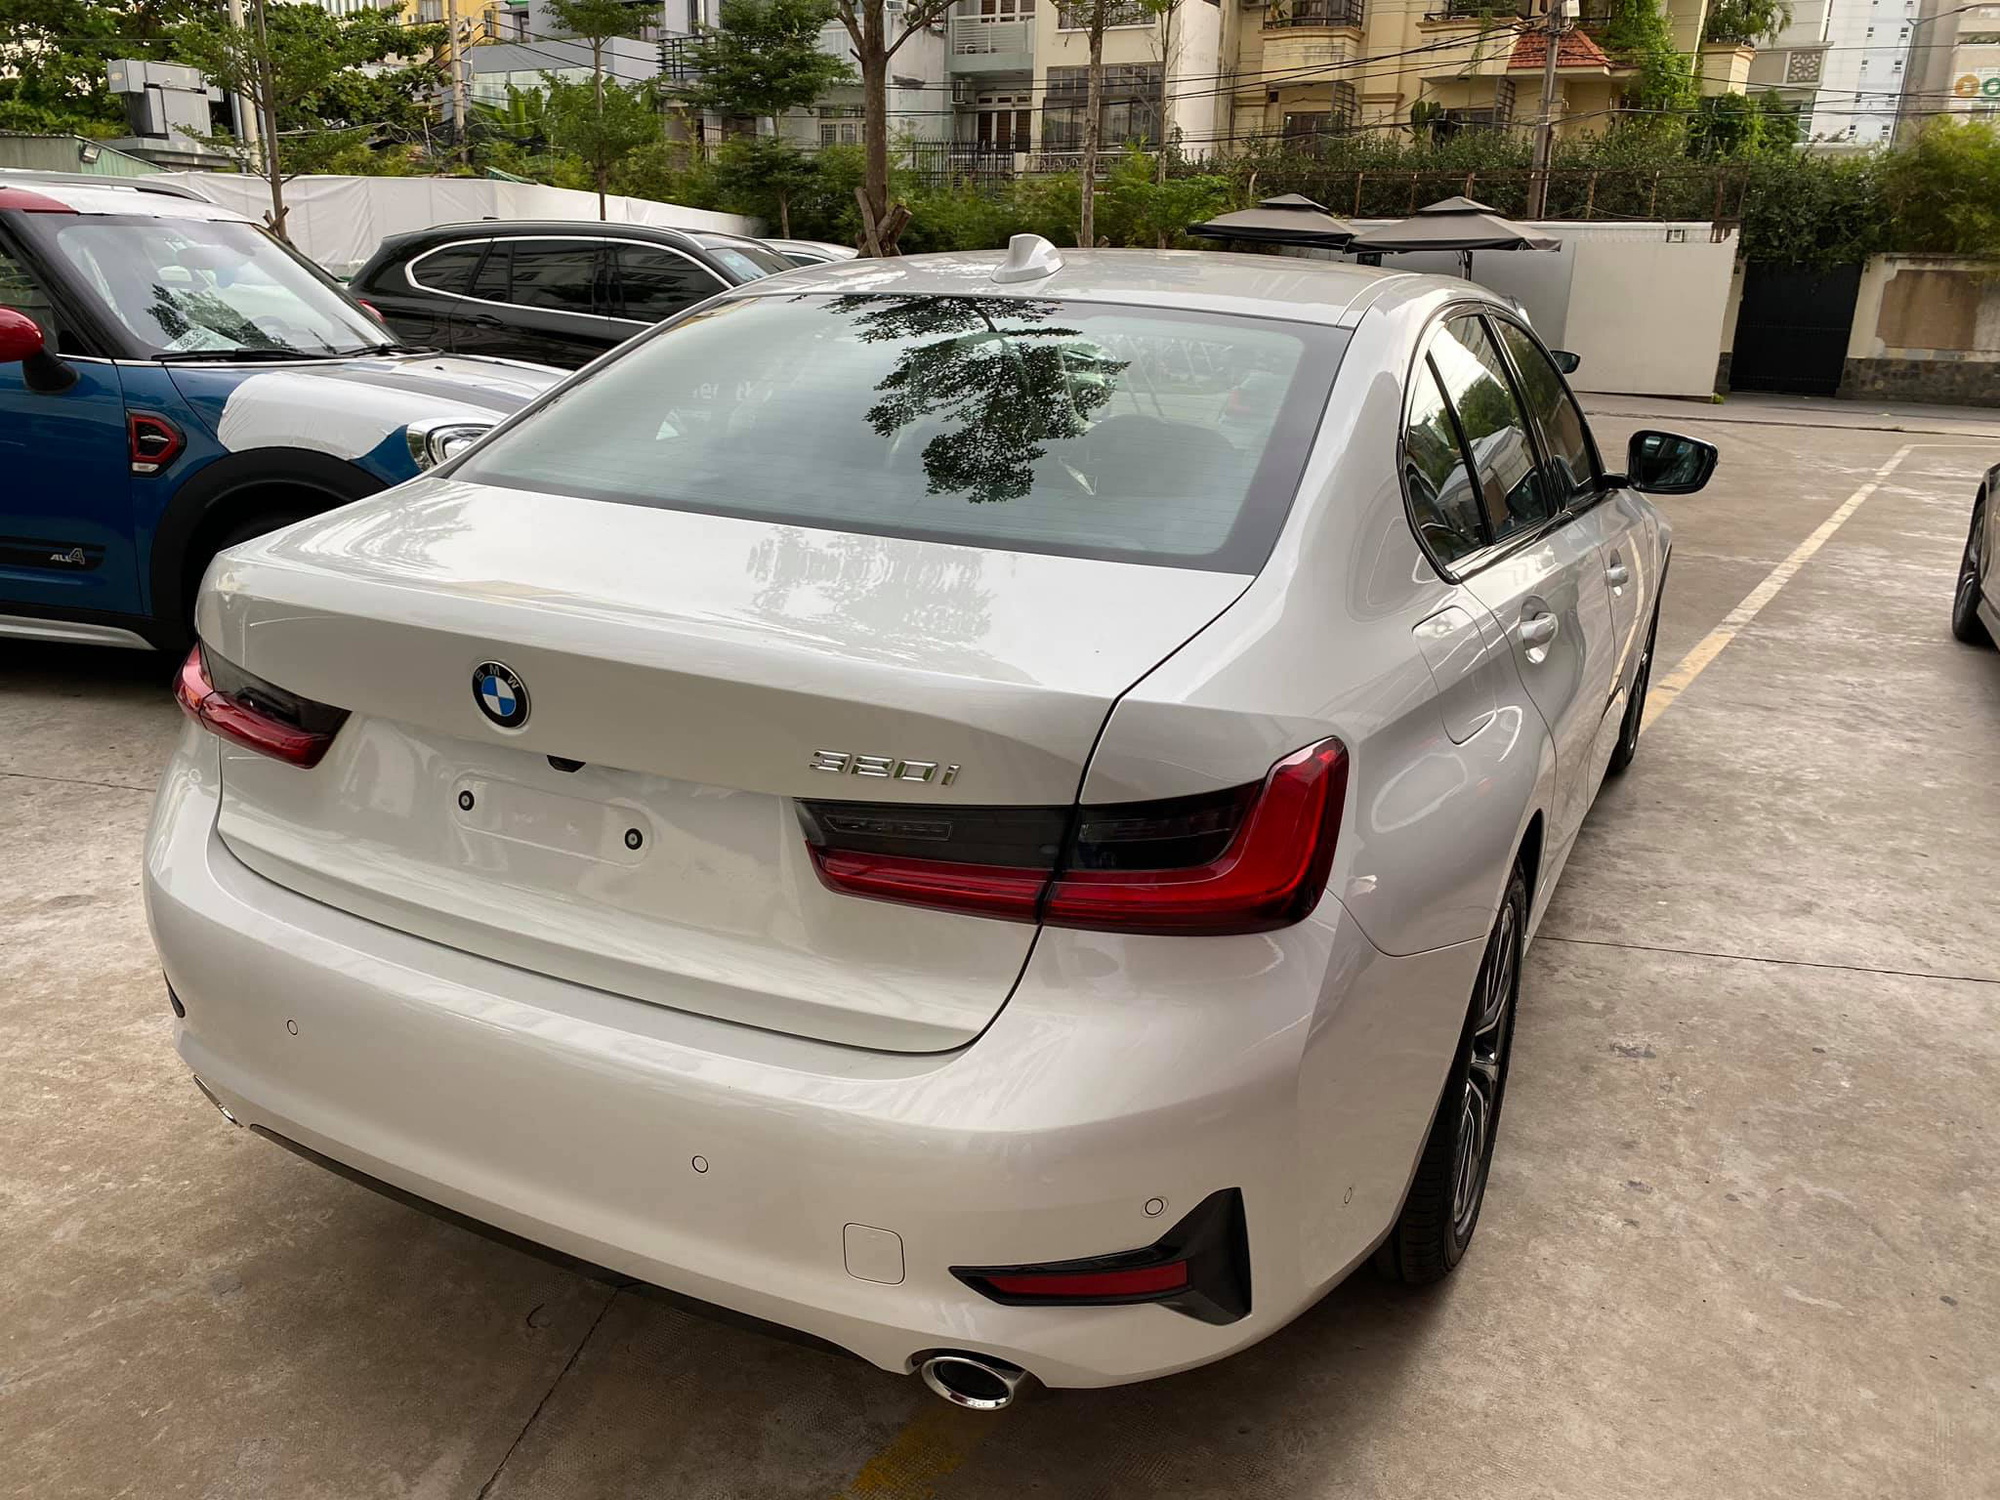 BMW 3-Series 2020 giá mềm về đại lý - Phả hơi nóng lên Mercedes C-Class và Audi A4 - Ảnh 3.